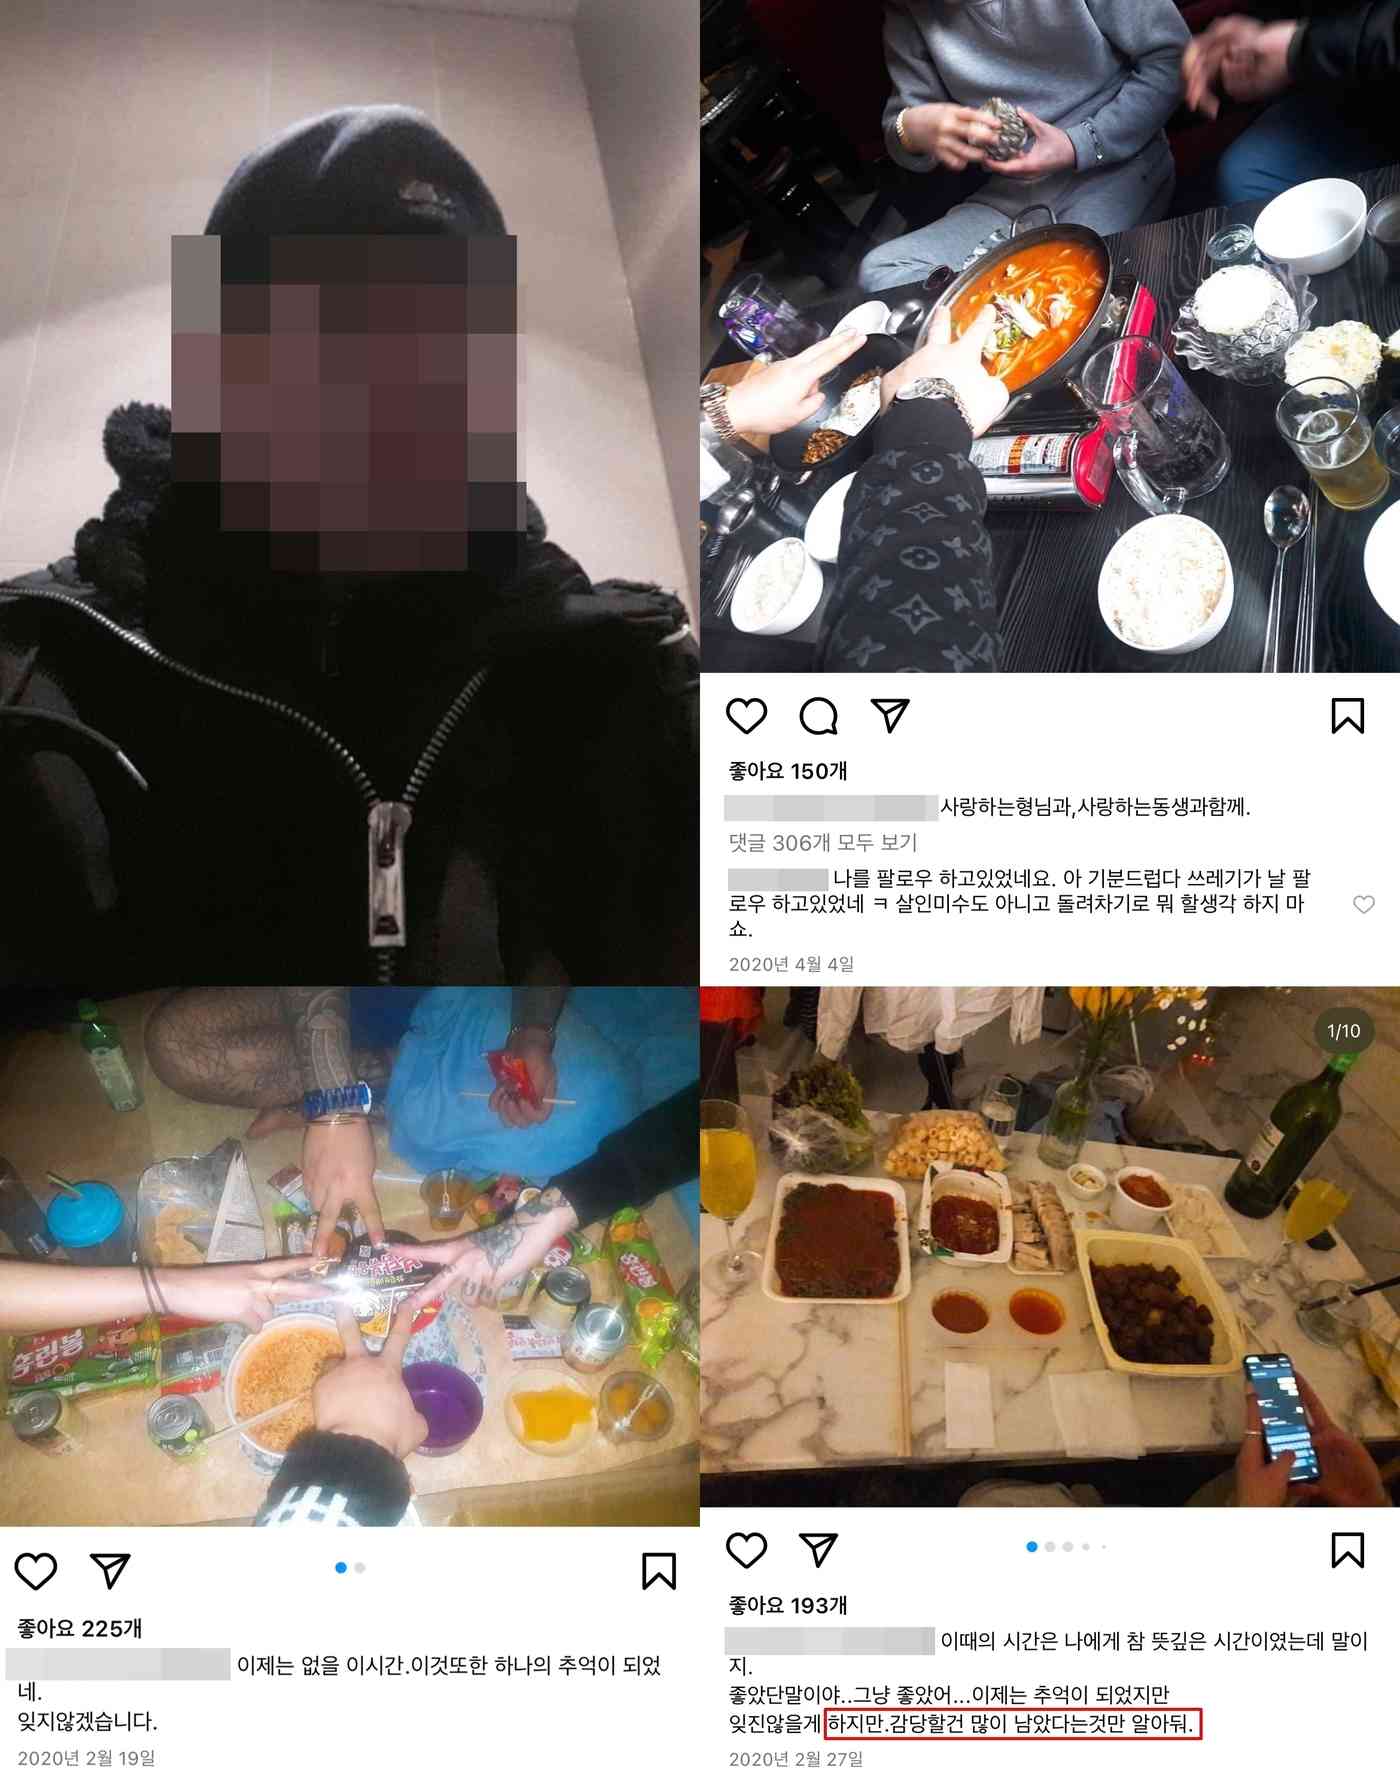 '부산 돌려차기' 사건의 가해자 A씨는 전 여자친구로 추정되는 인물의 사진과 영상을 올리고 보복을 예고하는 말을 덧붙였다. (인스타그램)